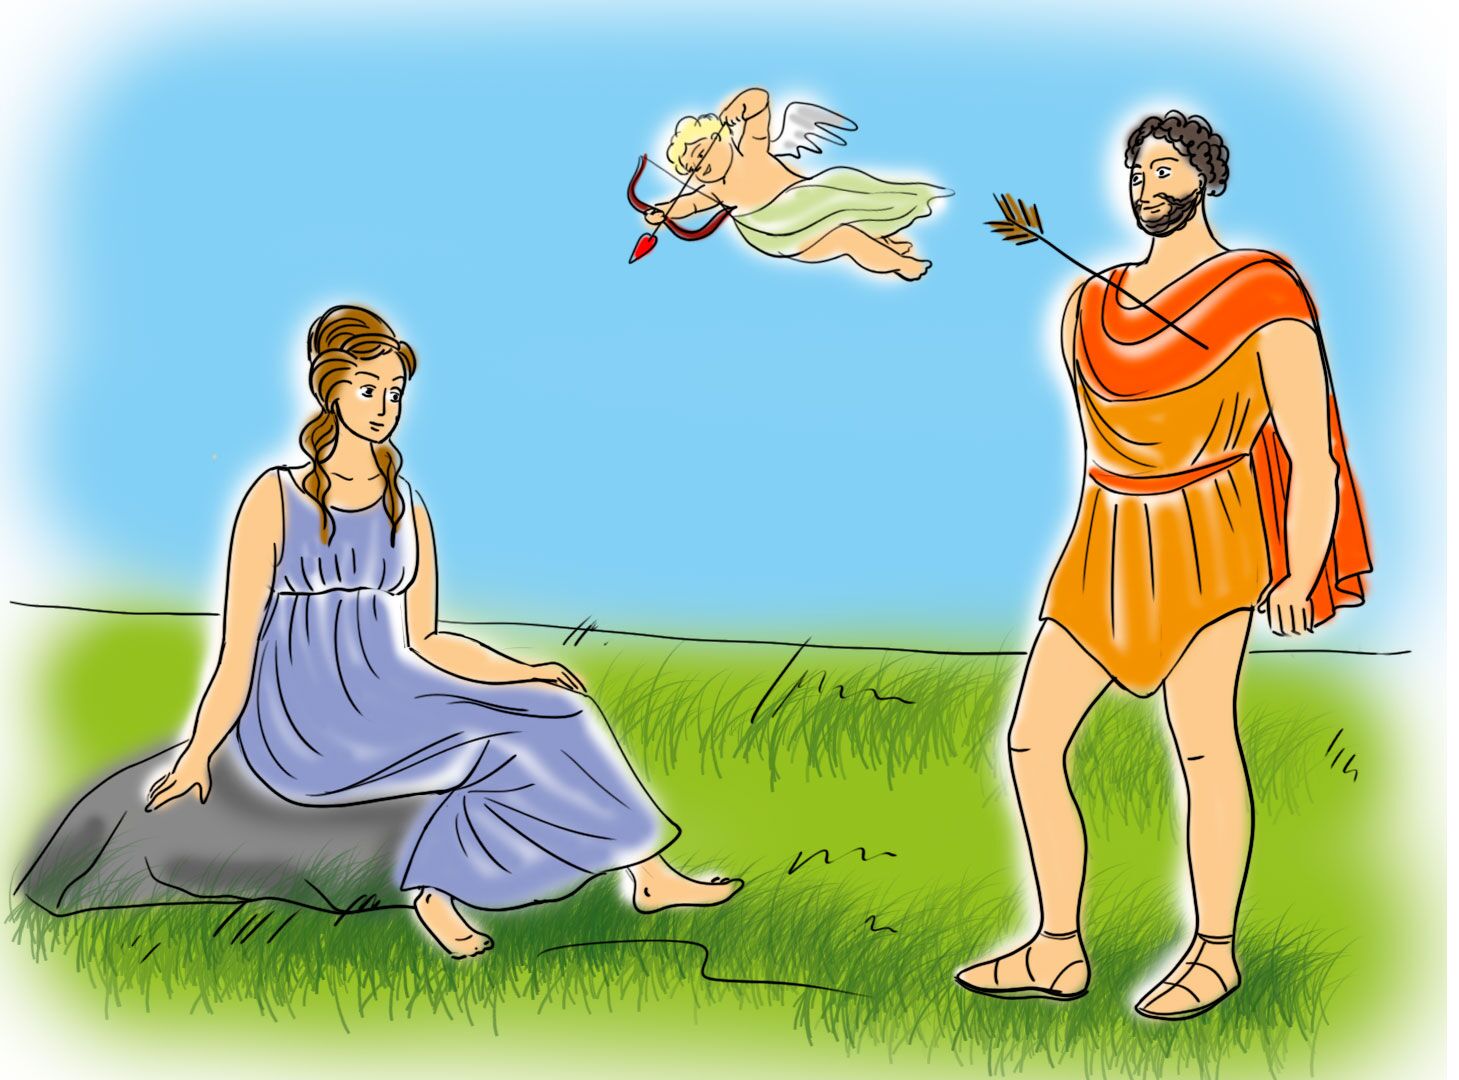 Иллюстрация к мифу о Ахиллесе